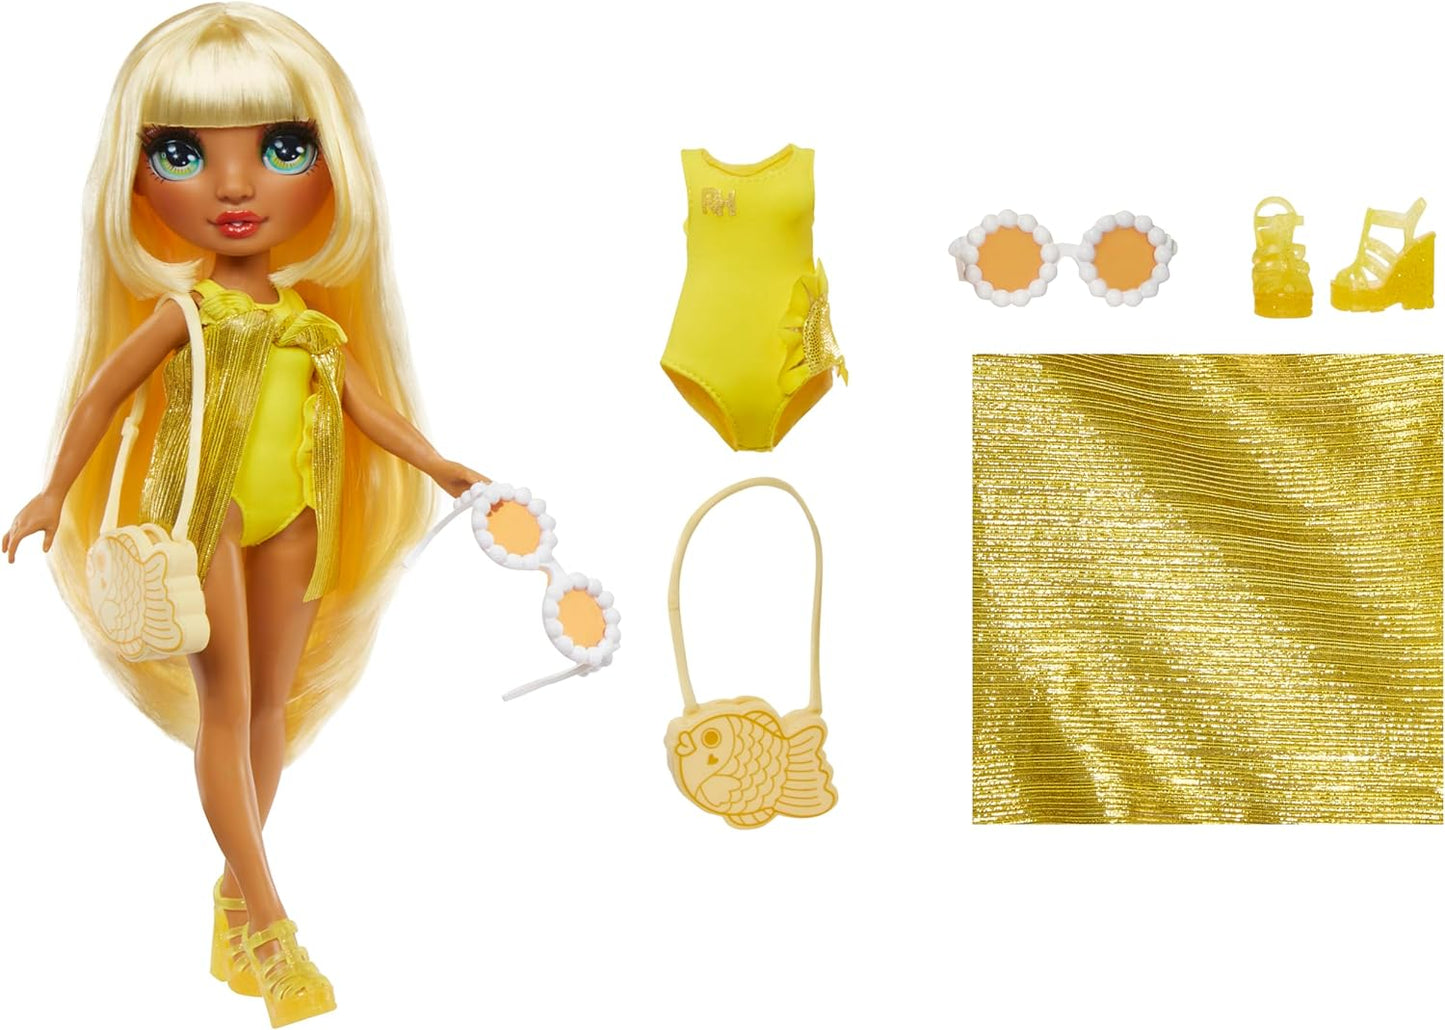 Rainbow High Swim & Style – Sunny (Amarelo) – Boneca de 28 cm com envoltório cintilante para estilizar mais de 10 maneiras – Maiô removível, sandálias, acessórios divertidos para brincar – Brinquedo infantil – Ótimo para idades de 4 a 12 anos